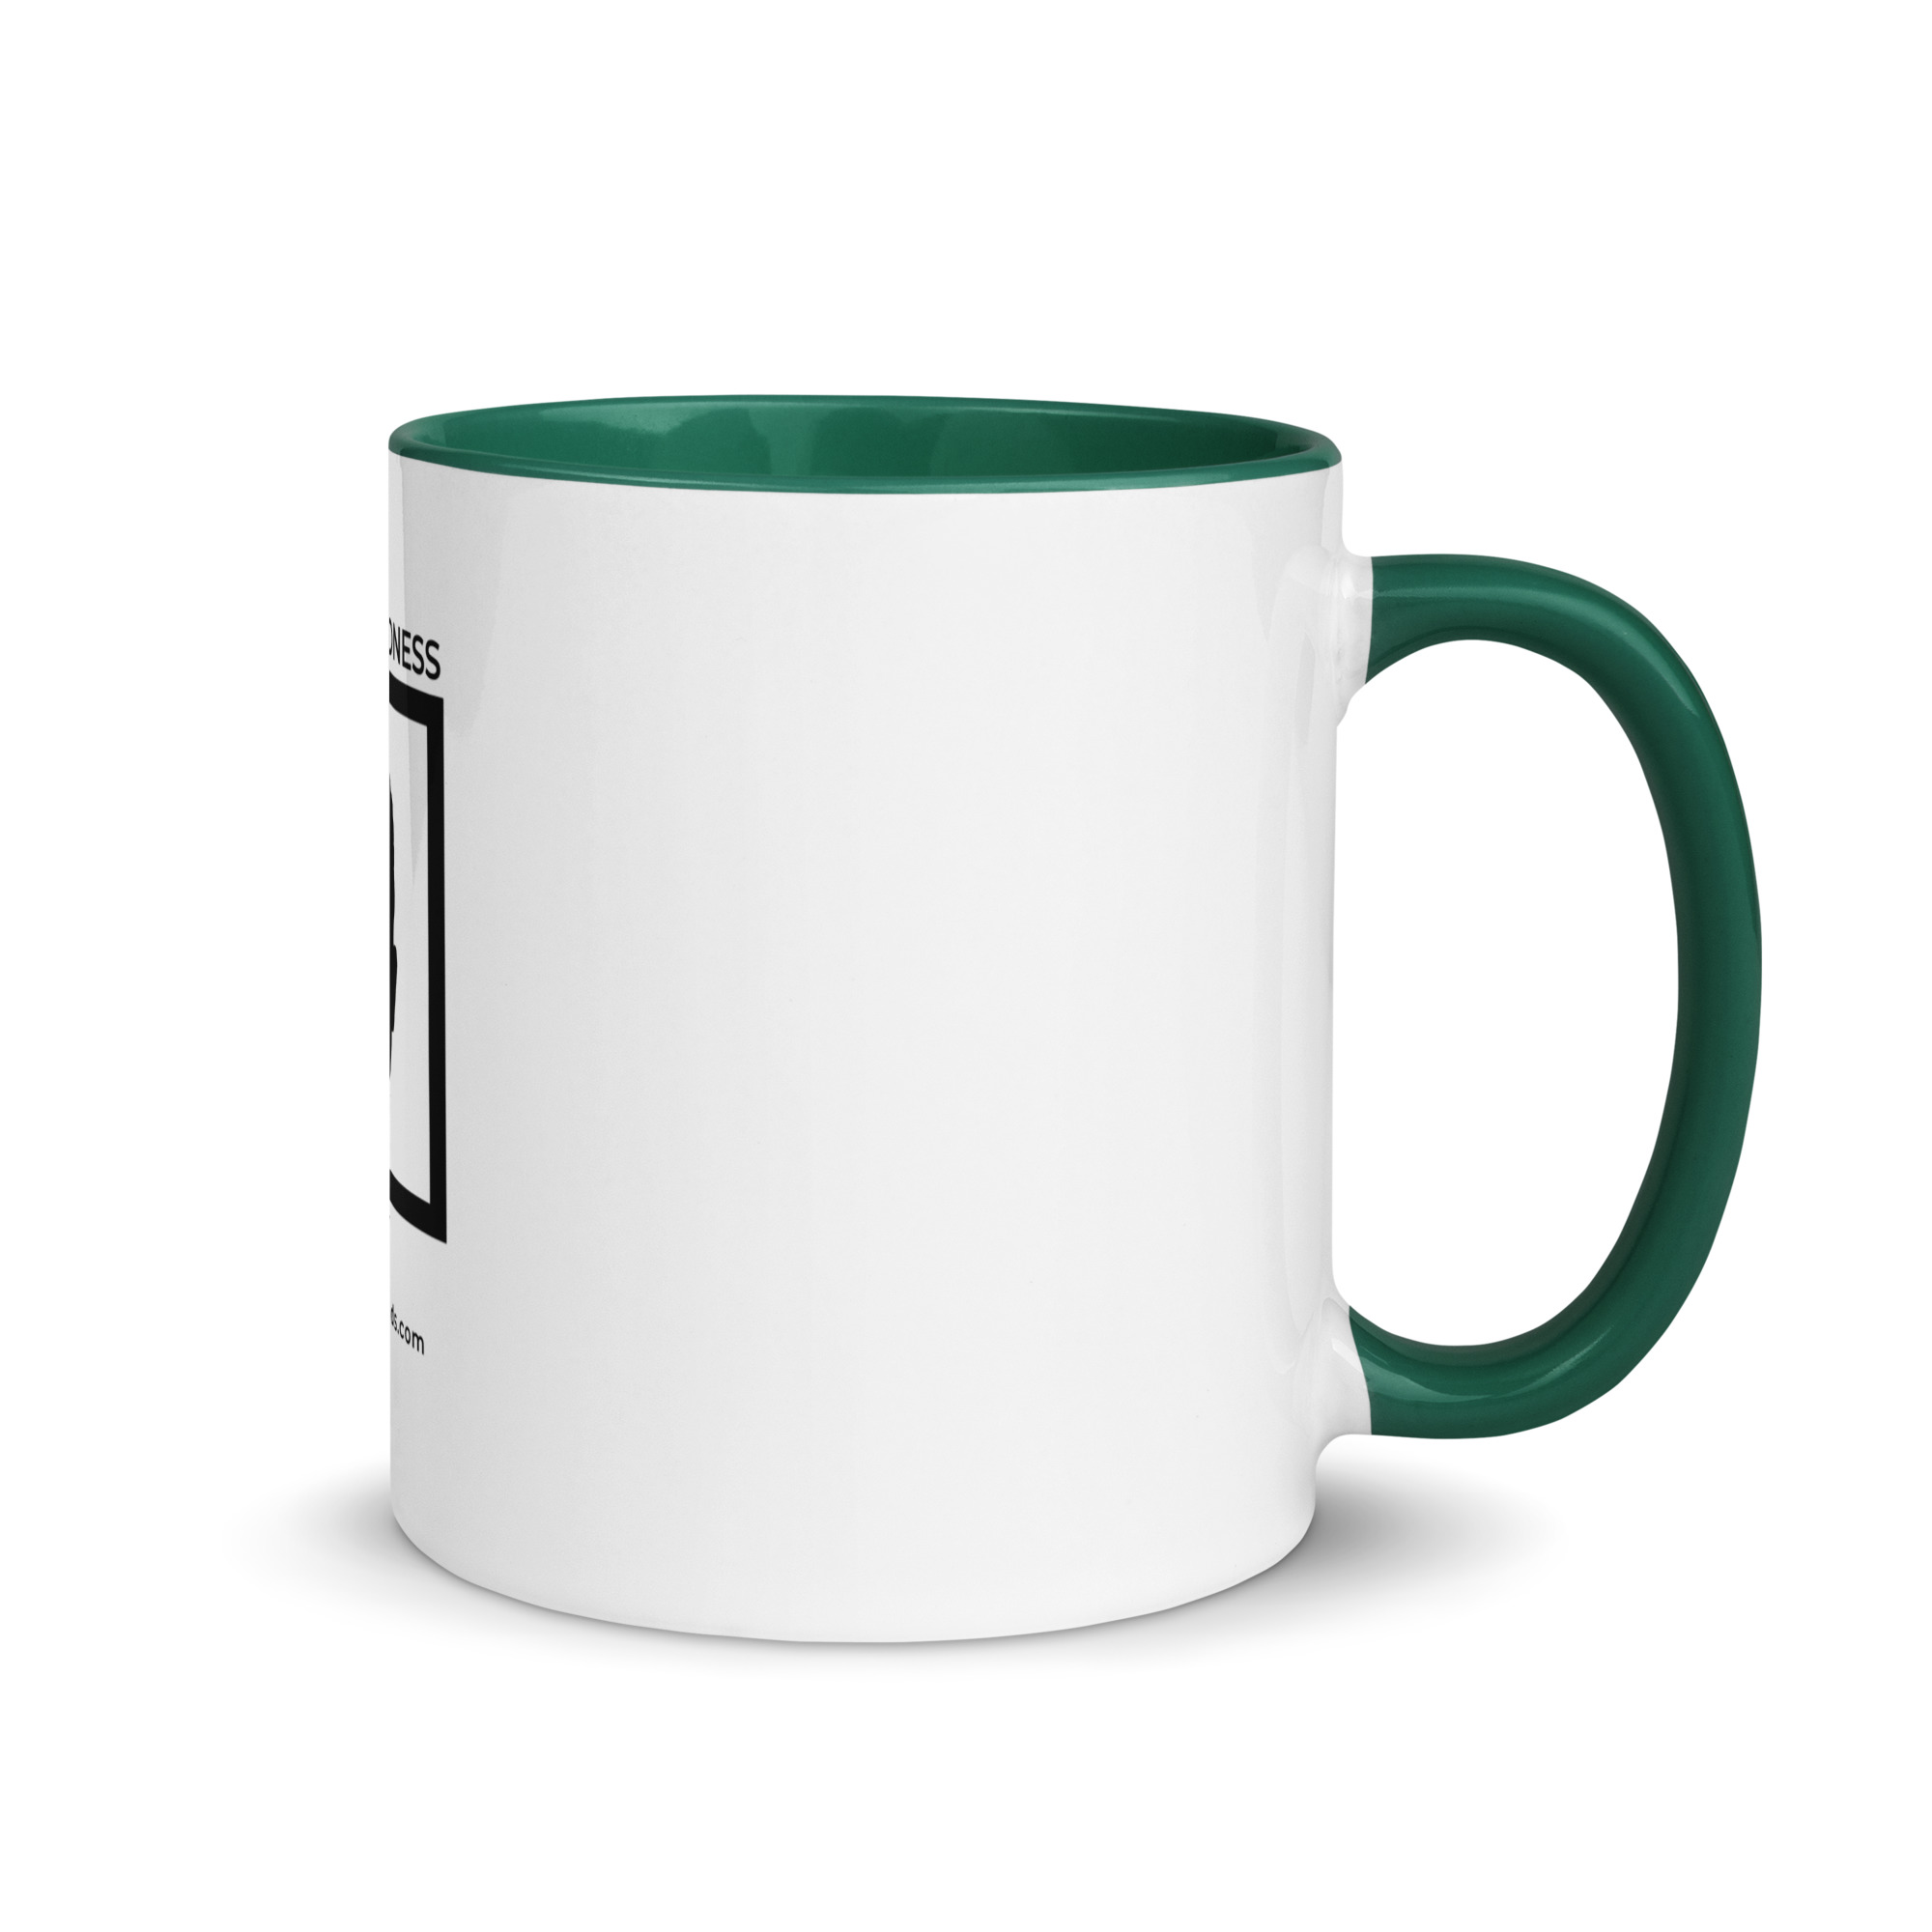 white-ceramic-mug-with-color-inside-dark-green-11-oz-right-6522a1a403da6.jpg